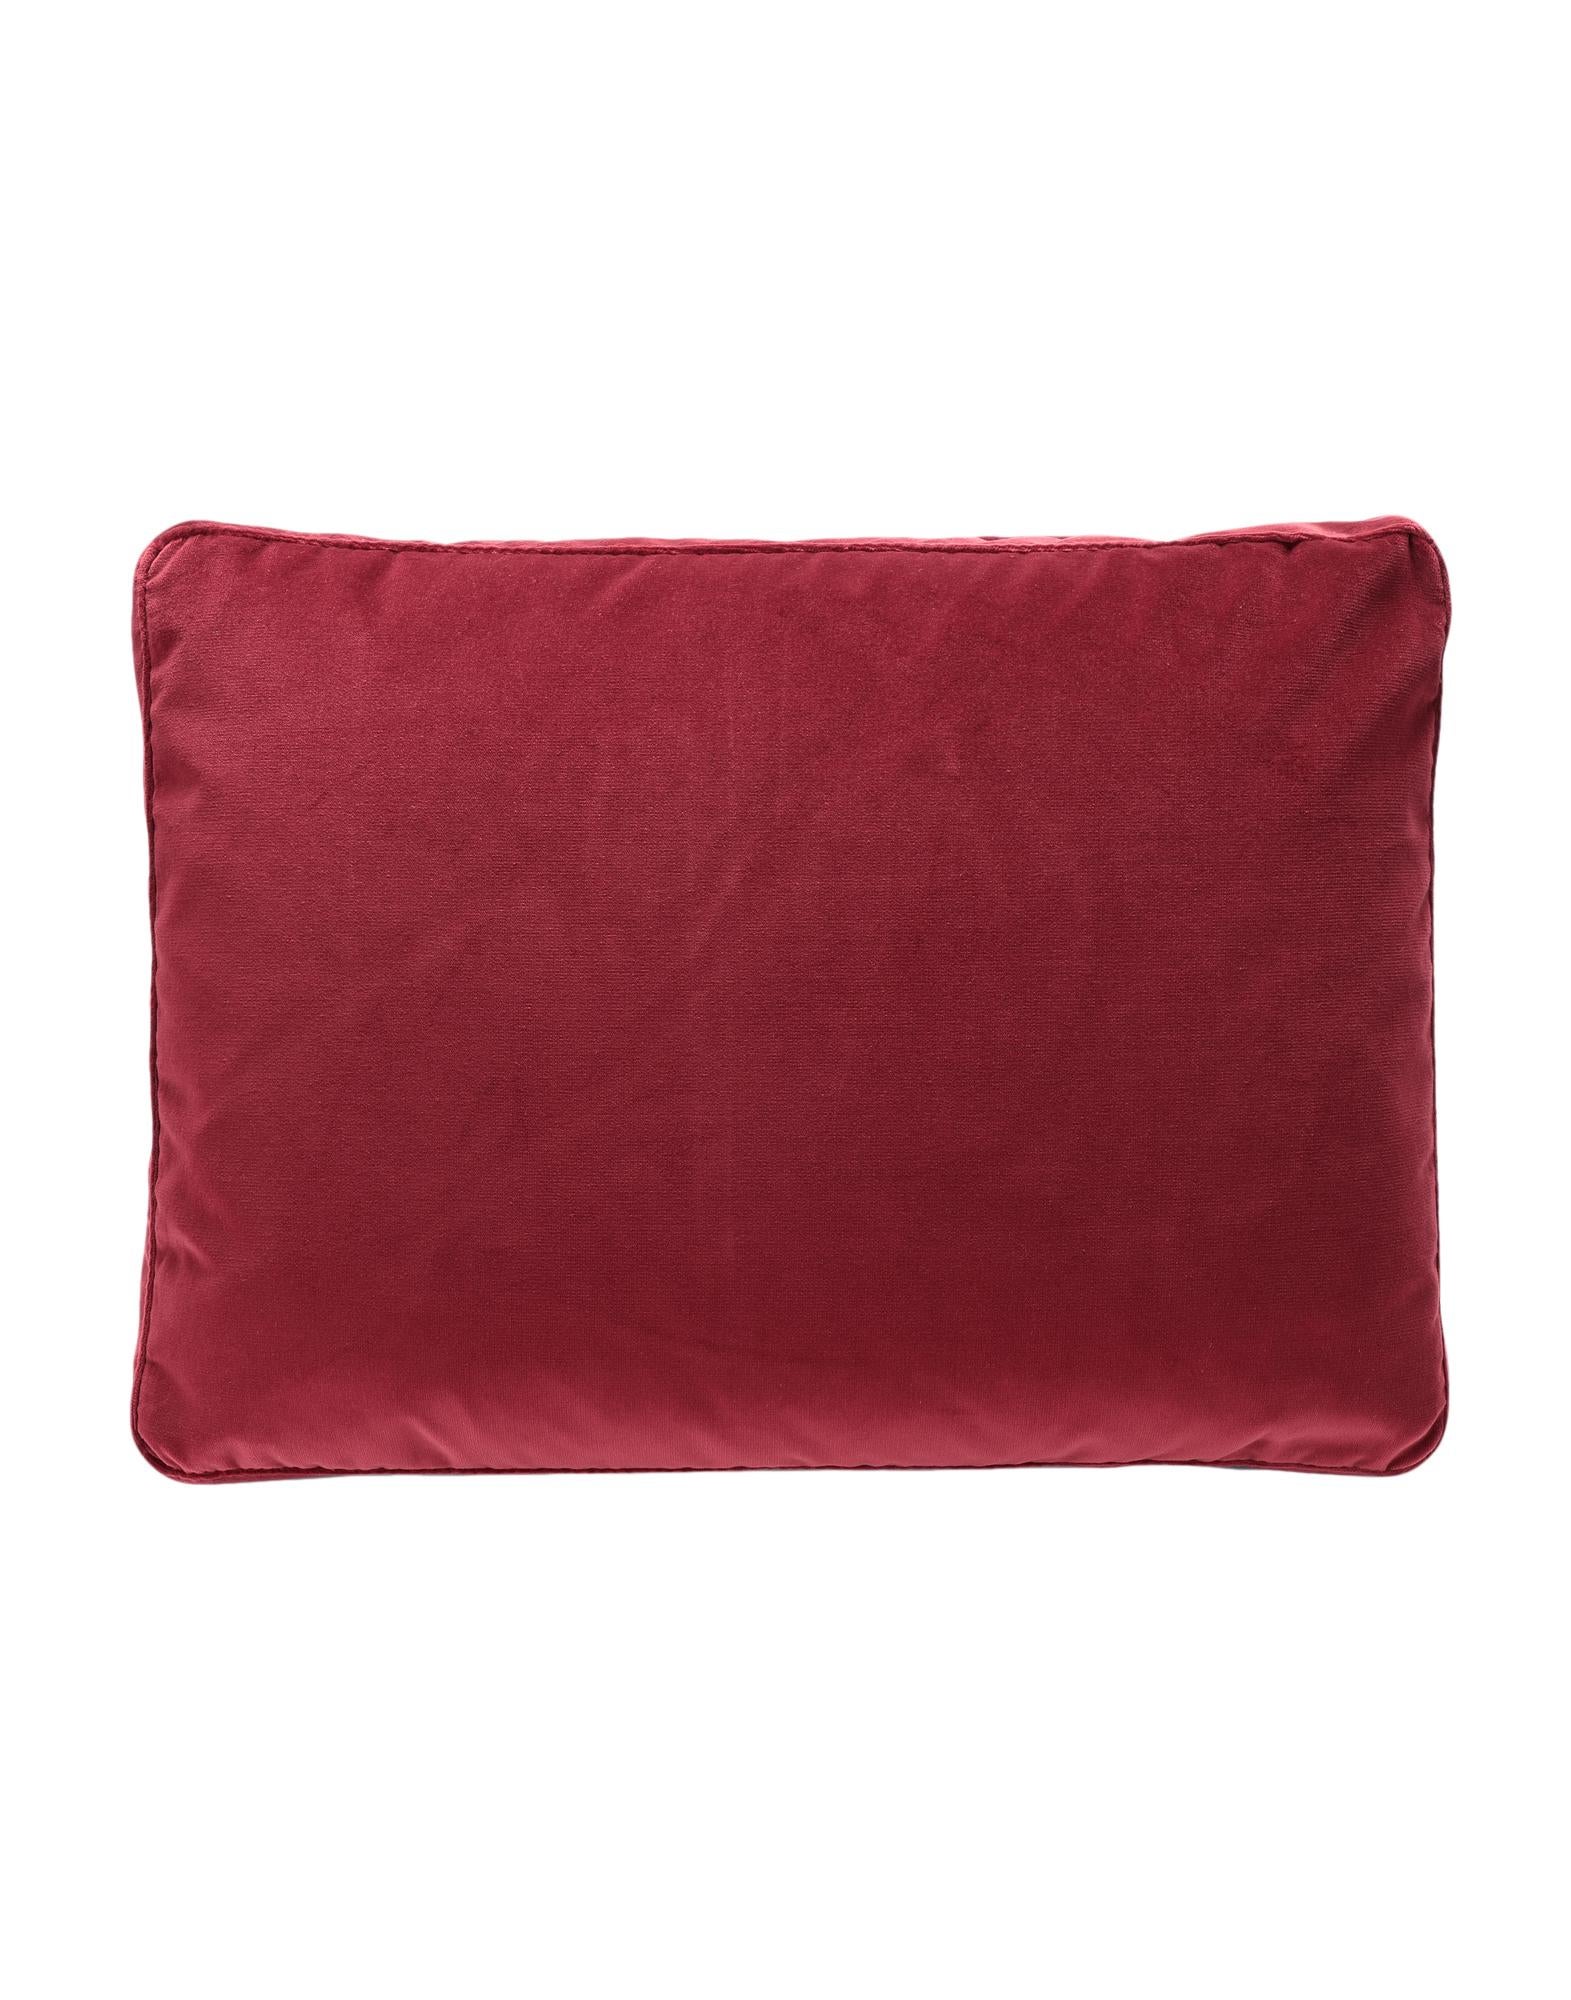 Kartell Cushions Largo in Velvet by Piero Lissoni For Sale 2